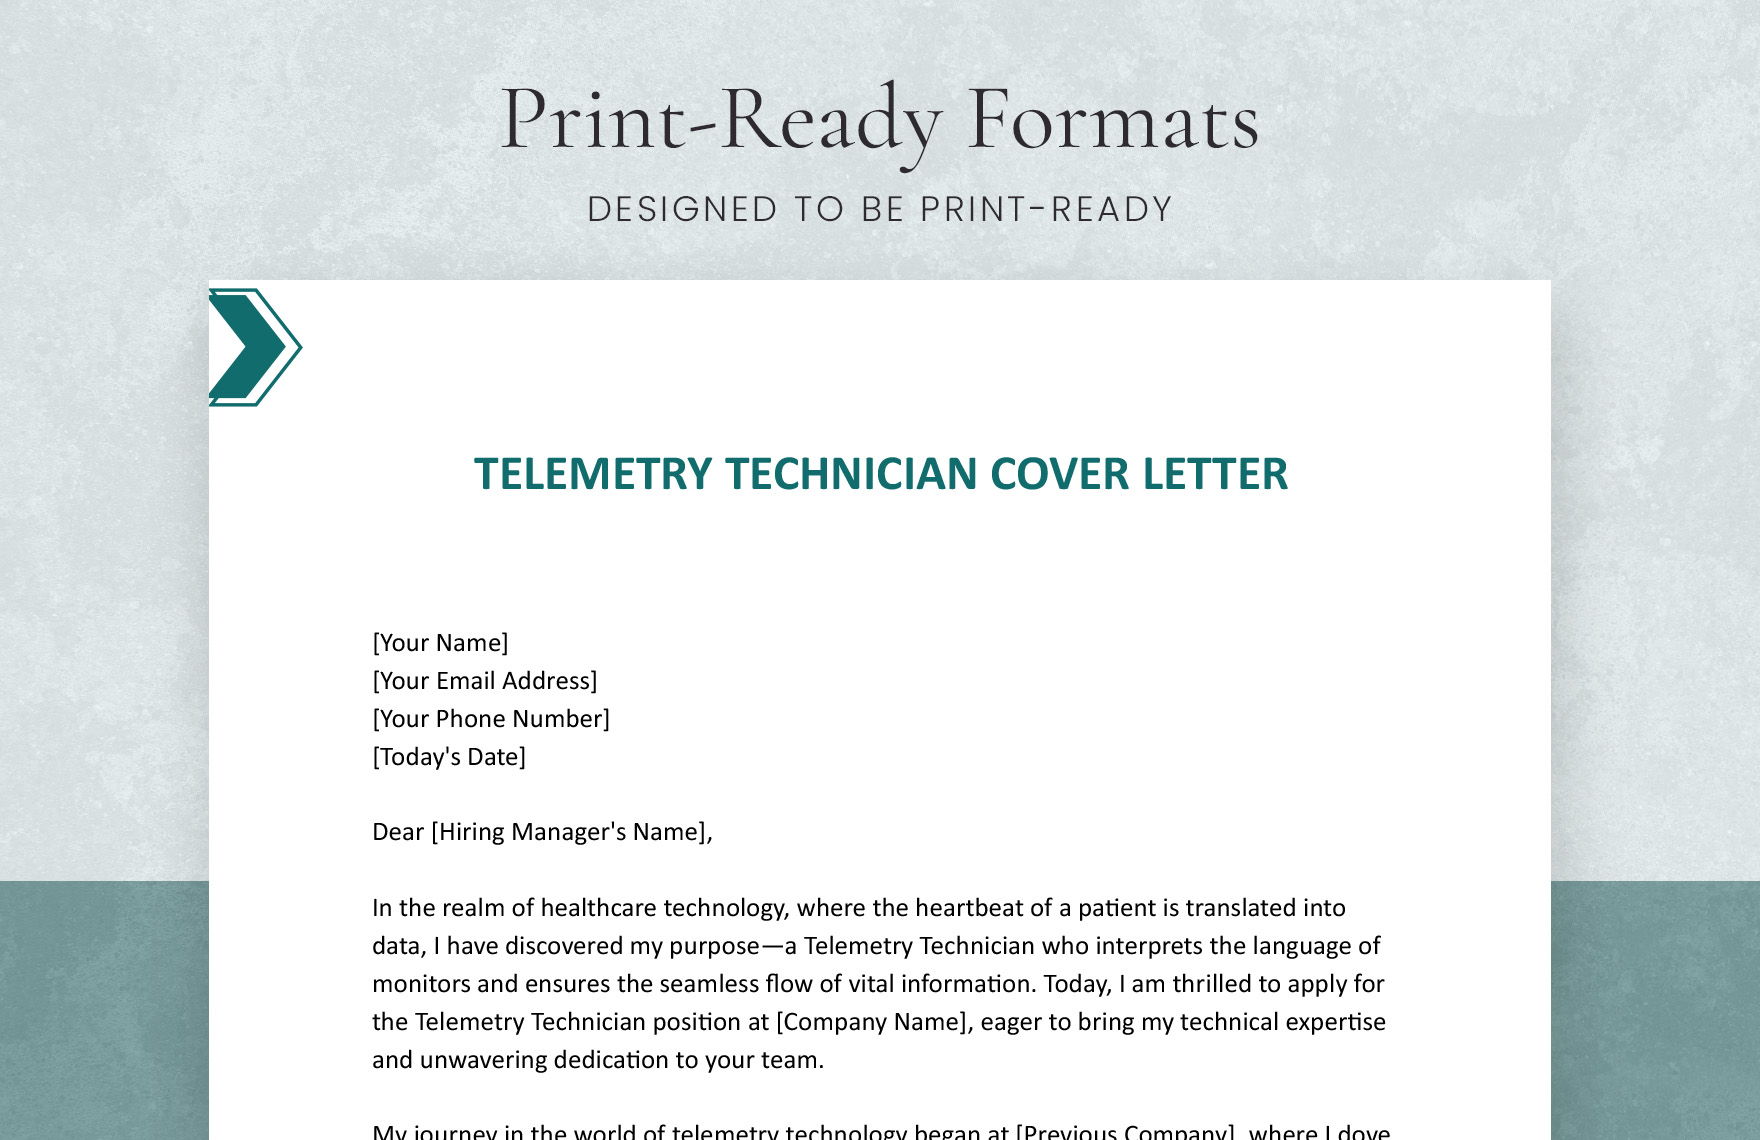 Telemetry Technician Cover Letter